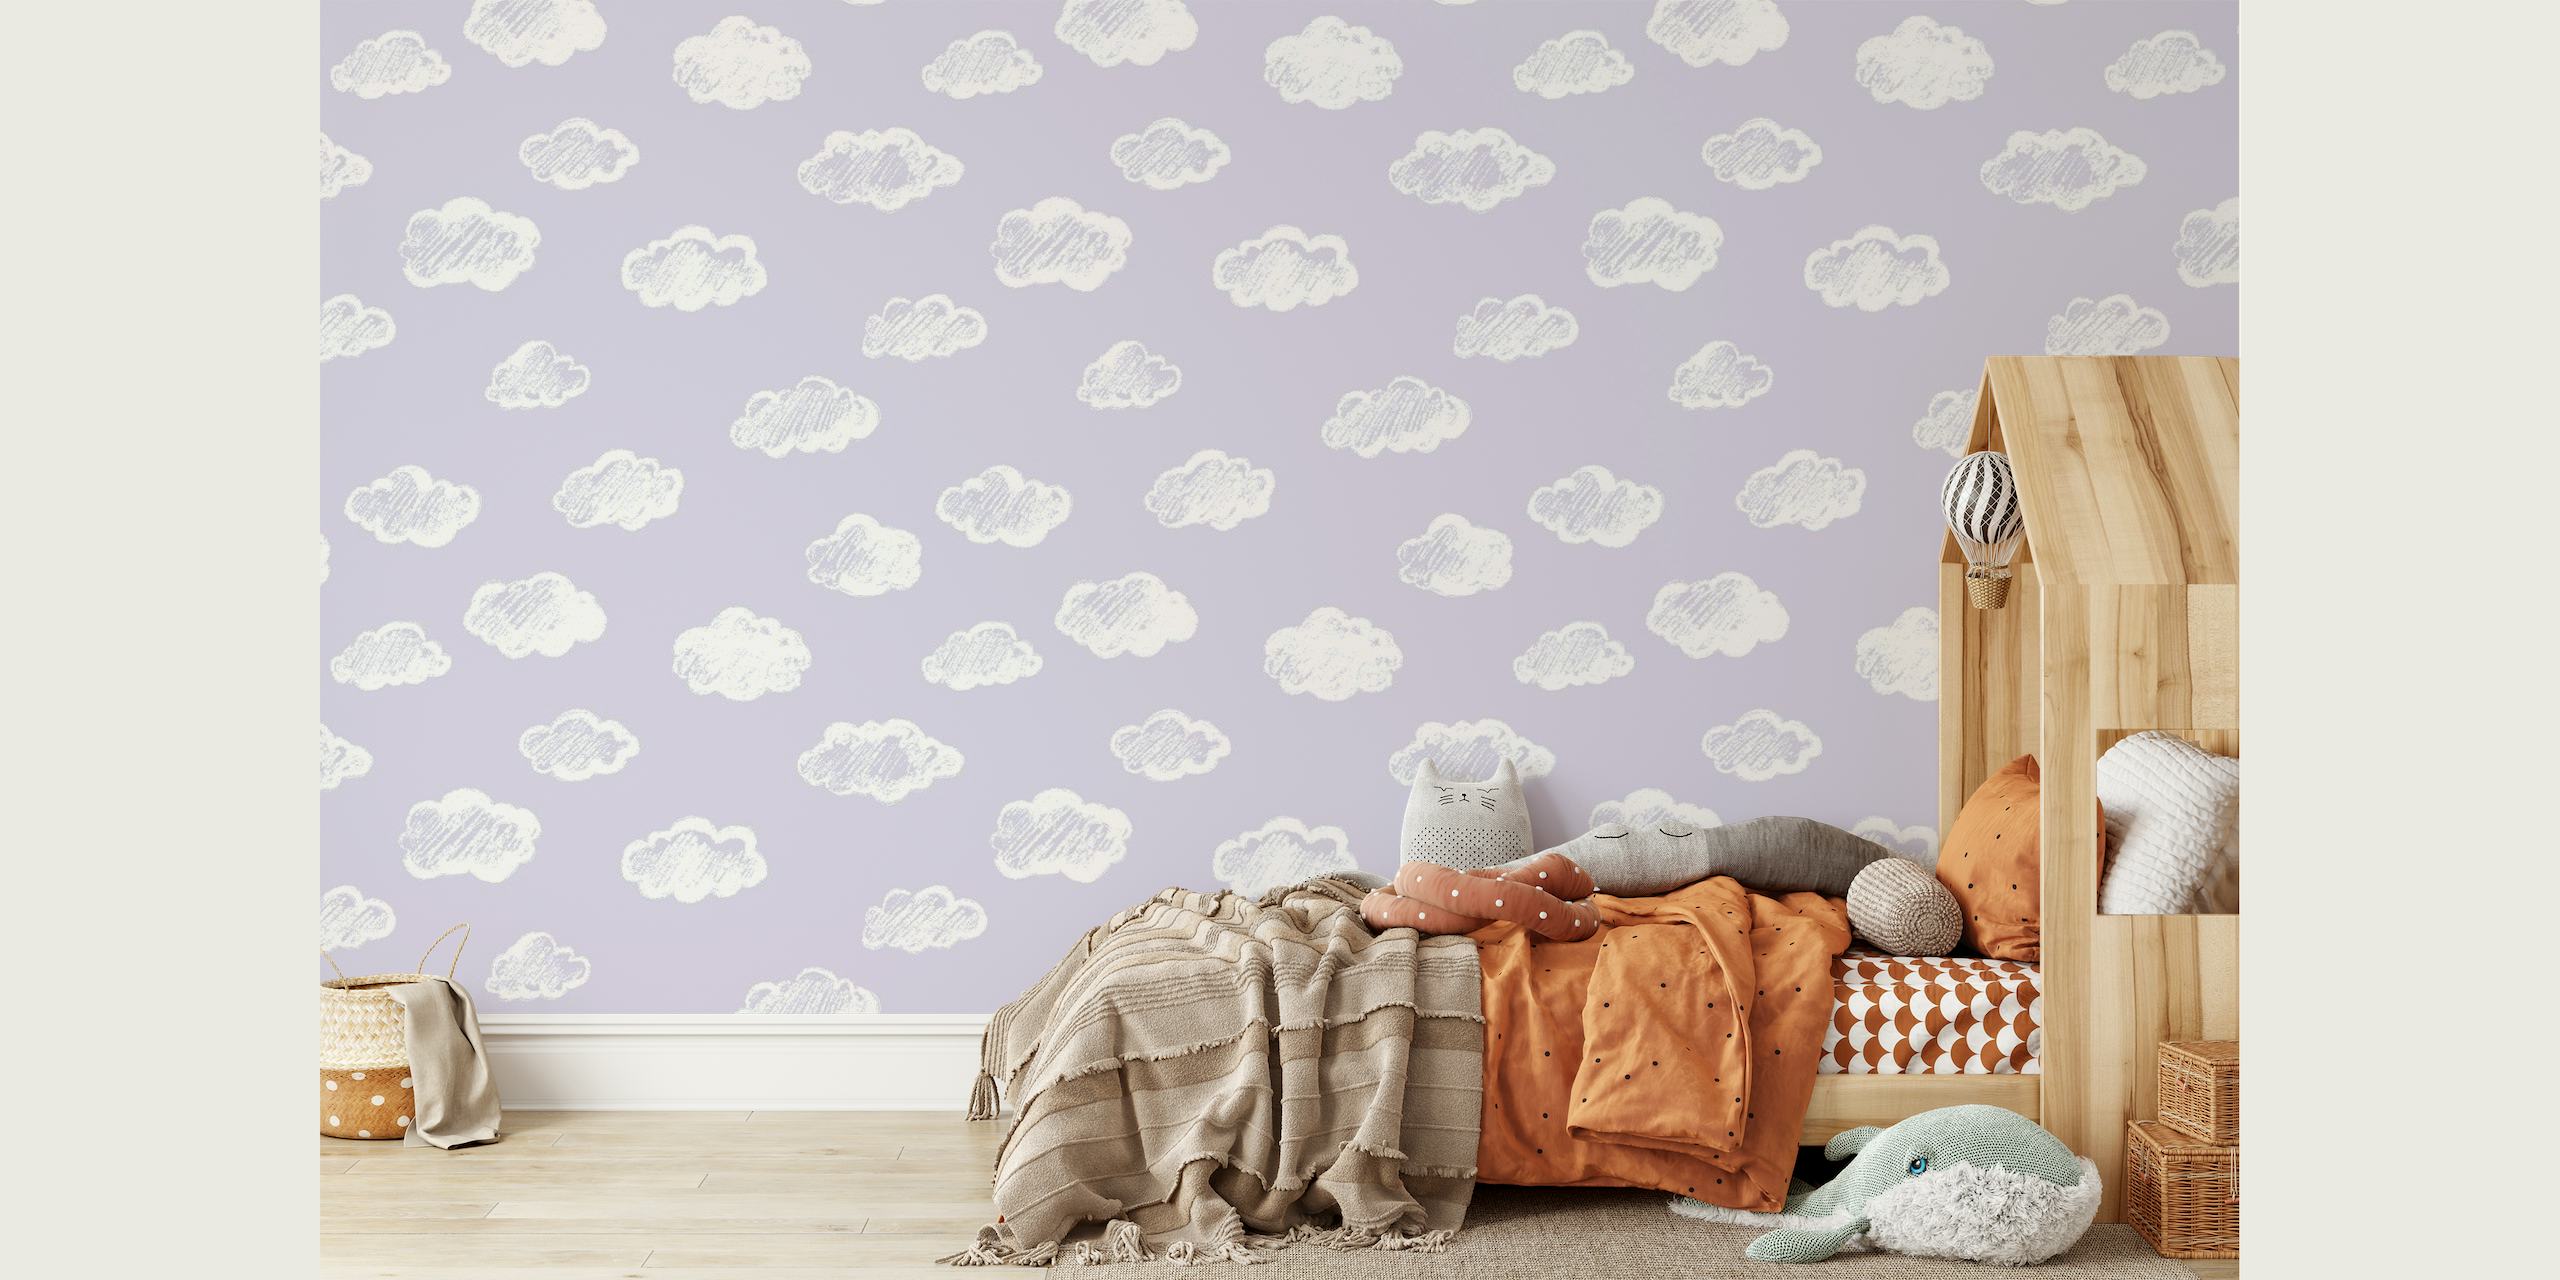 Nuvole bianche simili al gesso su un delicato murale con sfondo color lavanda